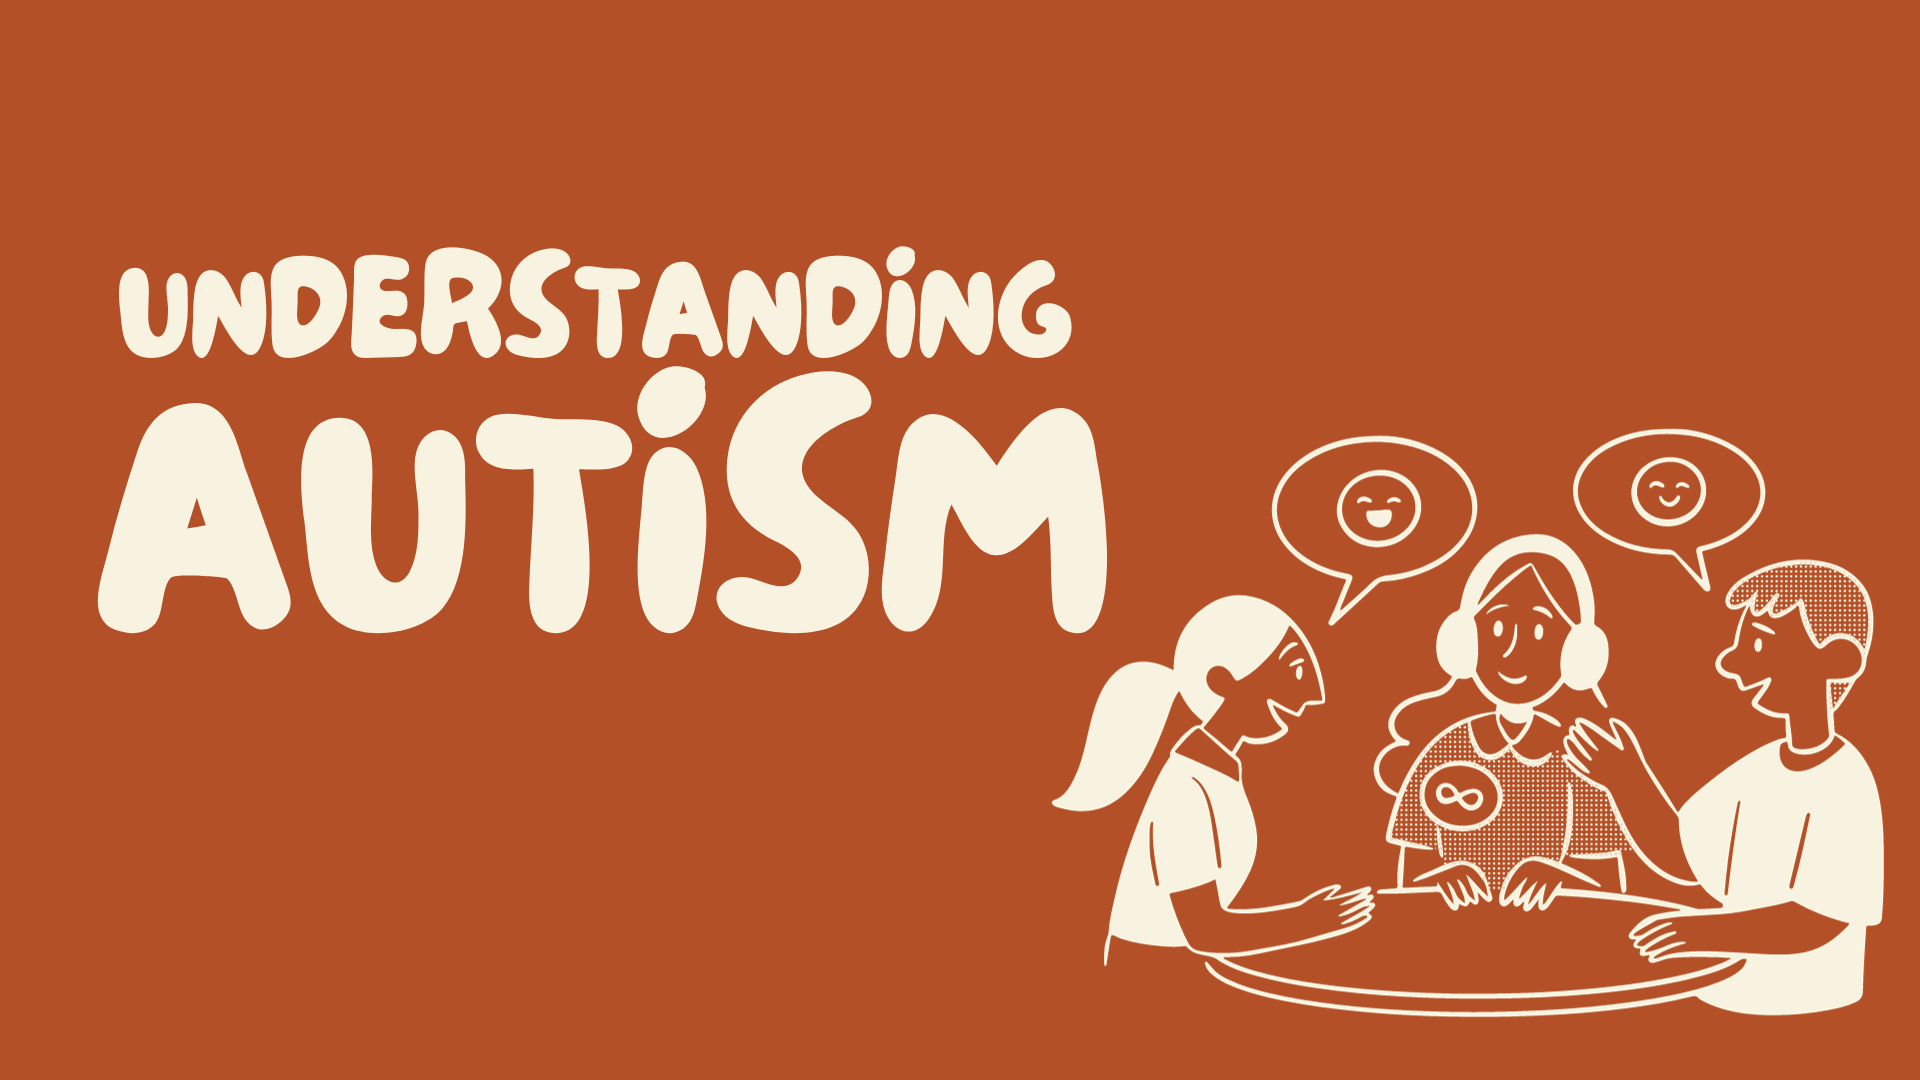 Understanding Autism Webinar